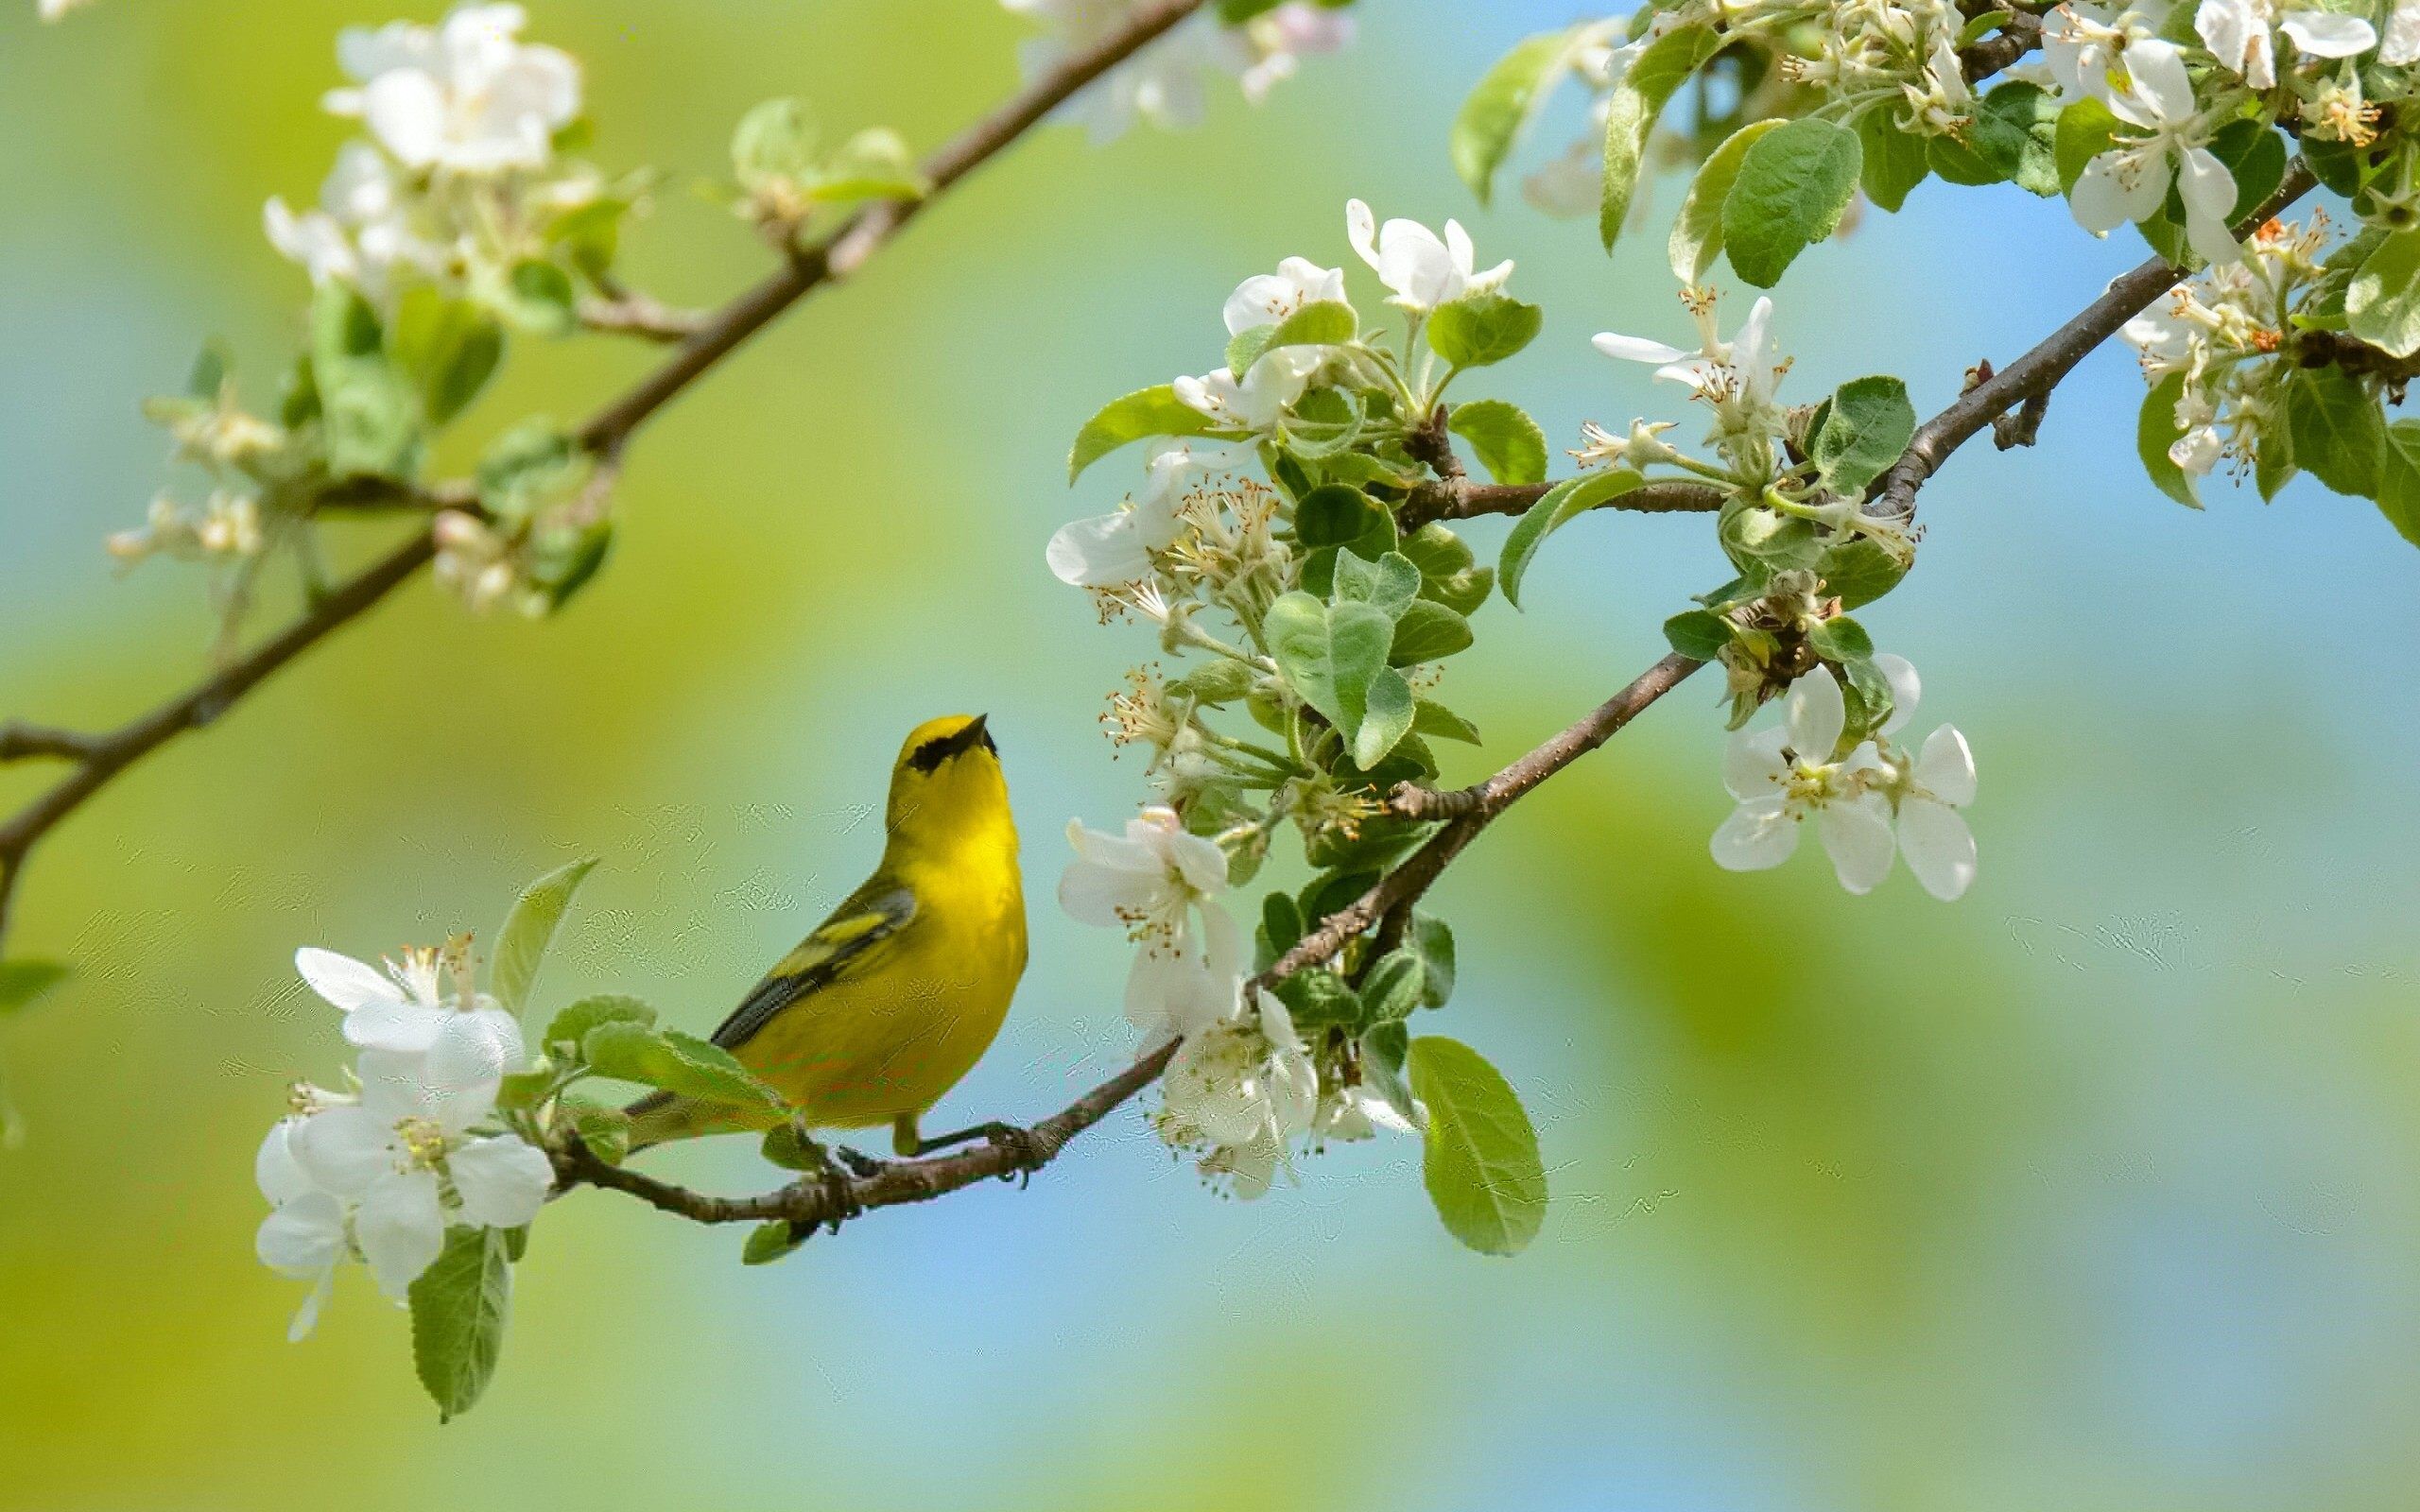 Yellow Bird On Flower Branch Wallpaper - Yellow Flowers And Bird - HD Wallpaper 